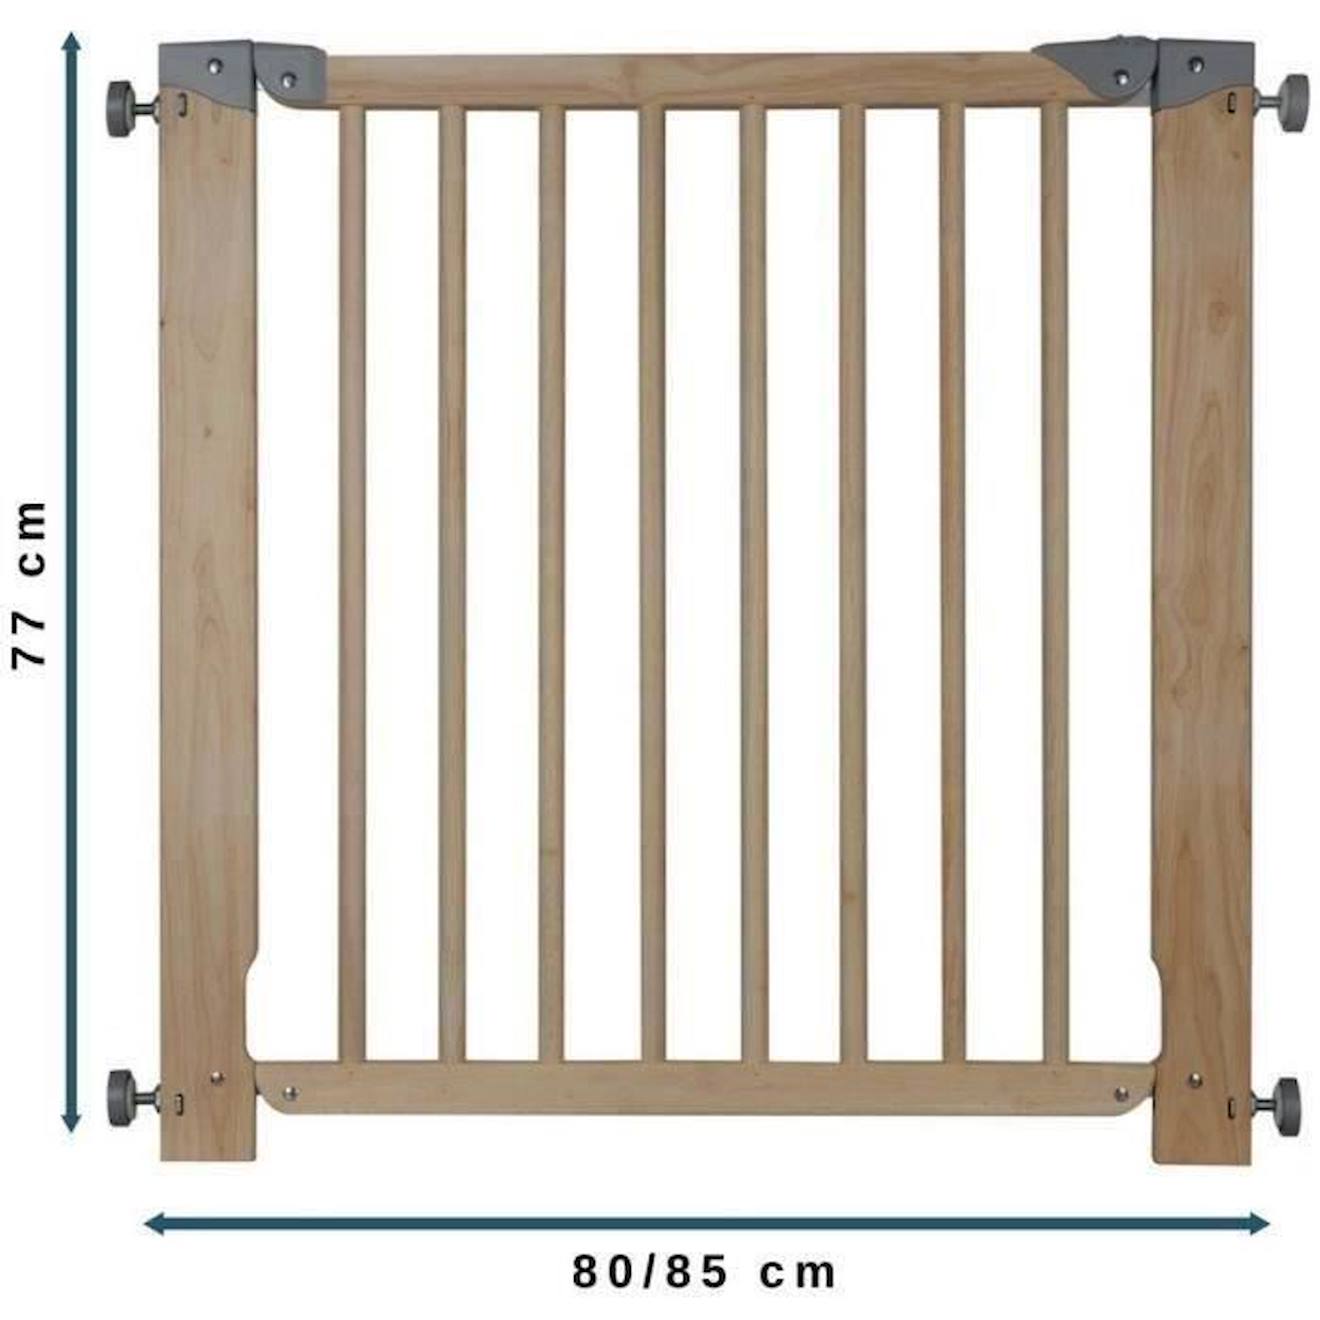 NORDLINGER PRO - Nordlinger pro barriere de sécurité enfant lea noire -  noir - 64 a 113cm - acier - barriere a portillon